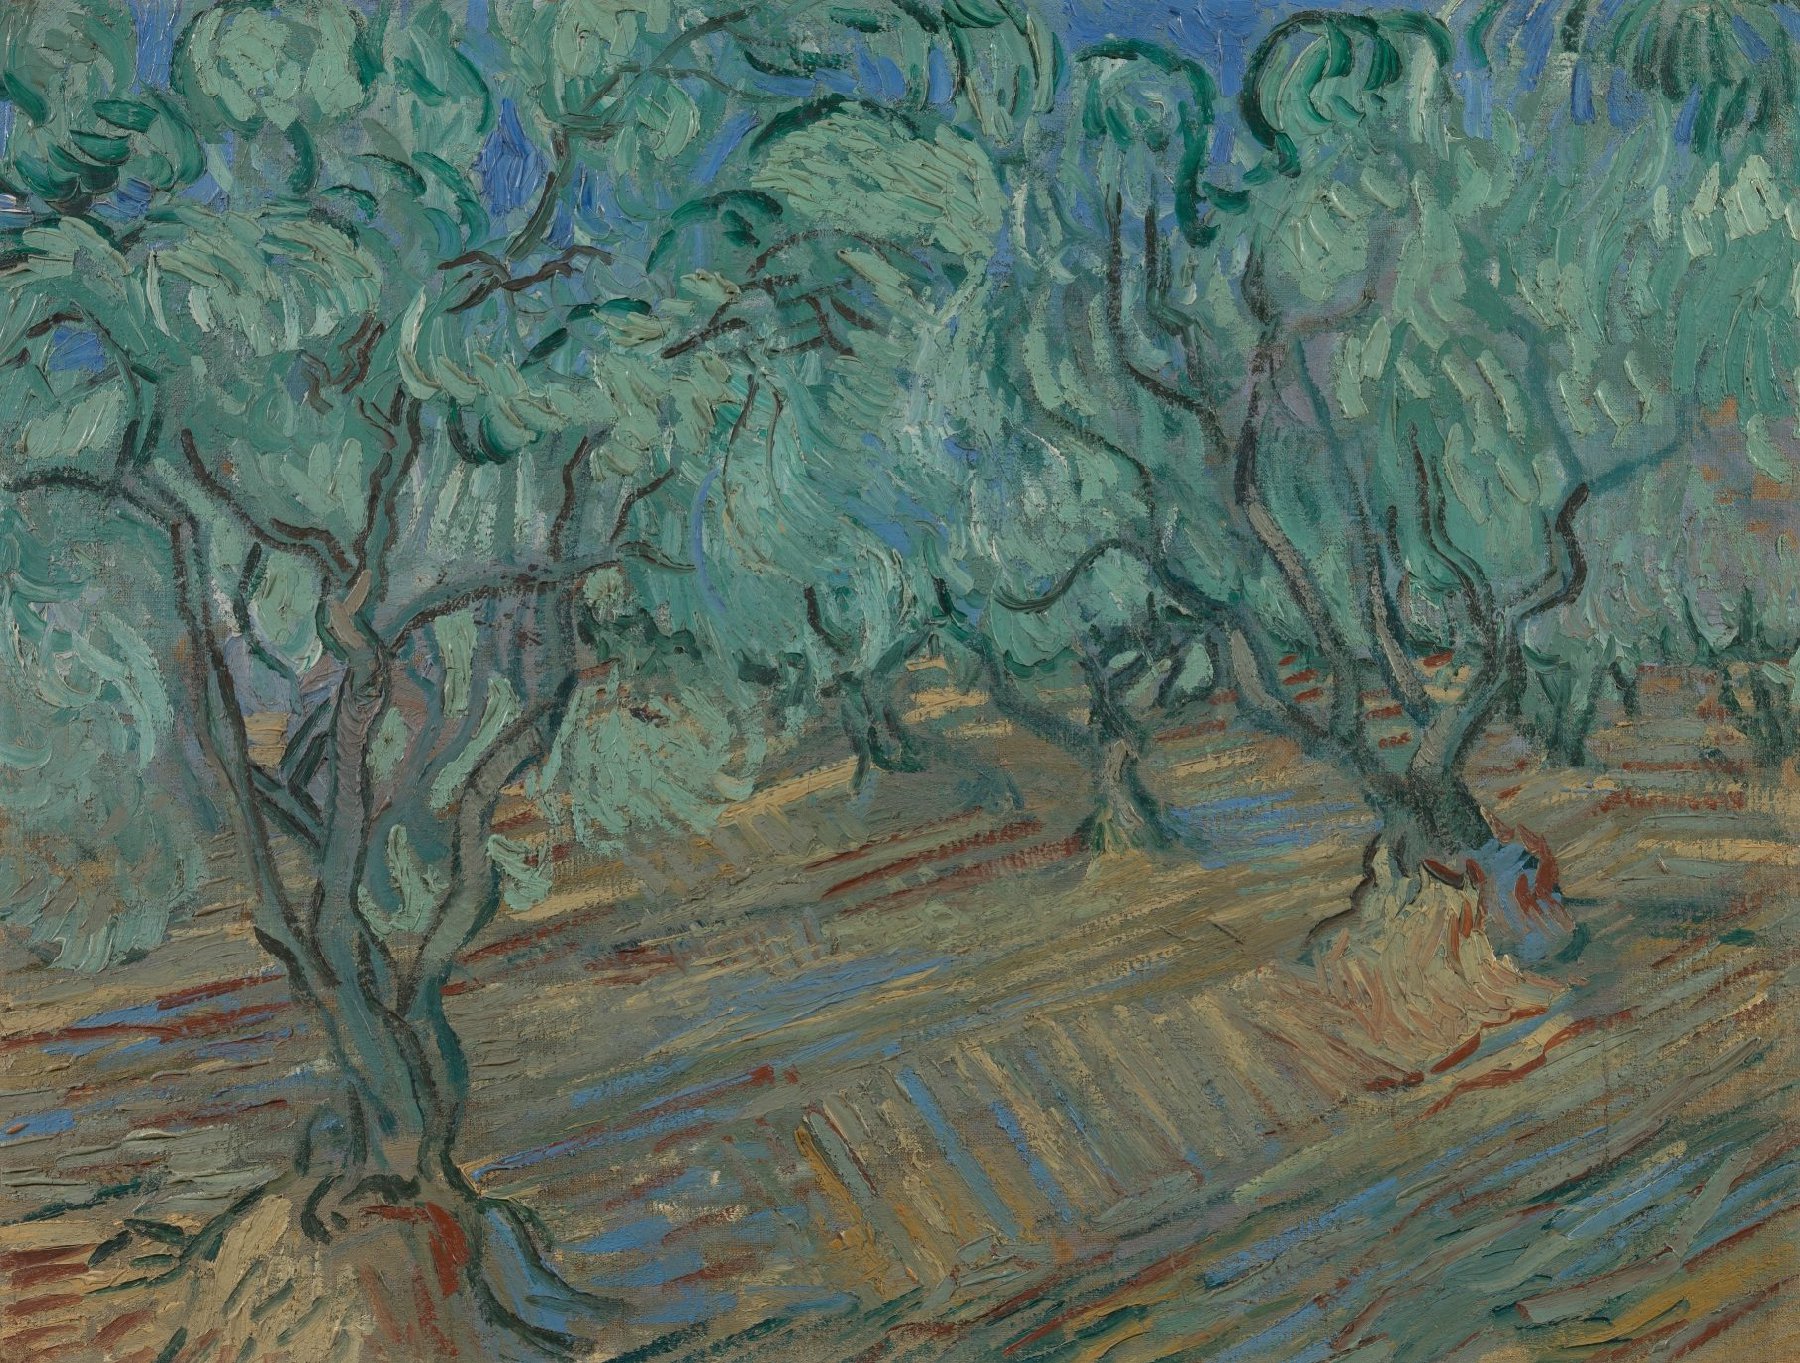 Olijfgaard Vincent van Gogh (1853 - 1890), Saint-Rémy-de-Provence, juni 1889